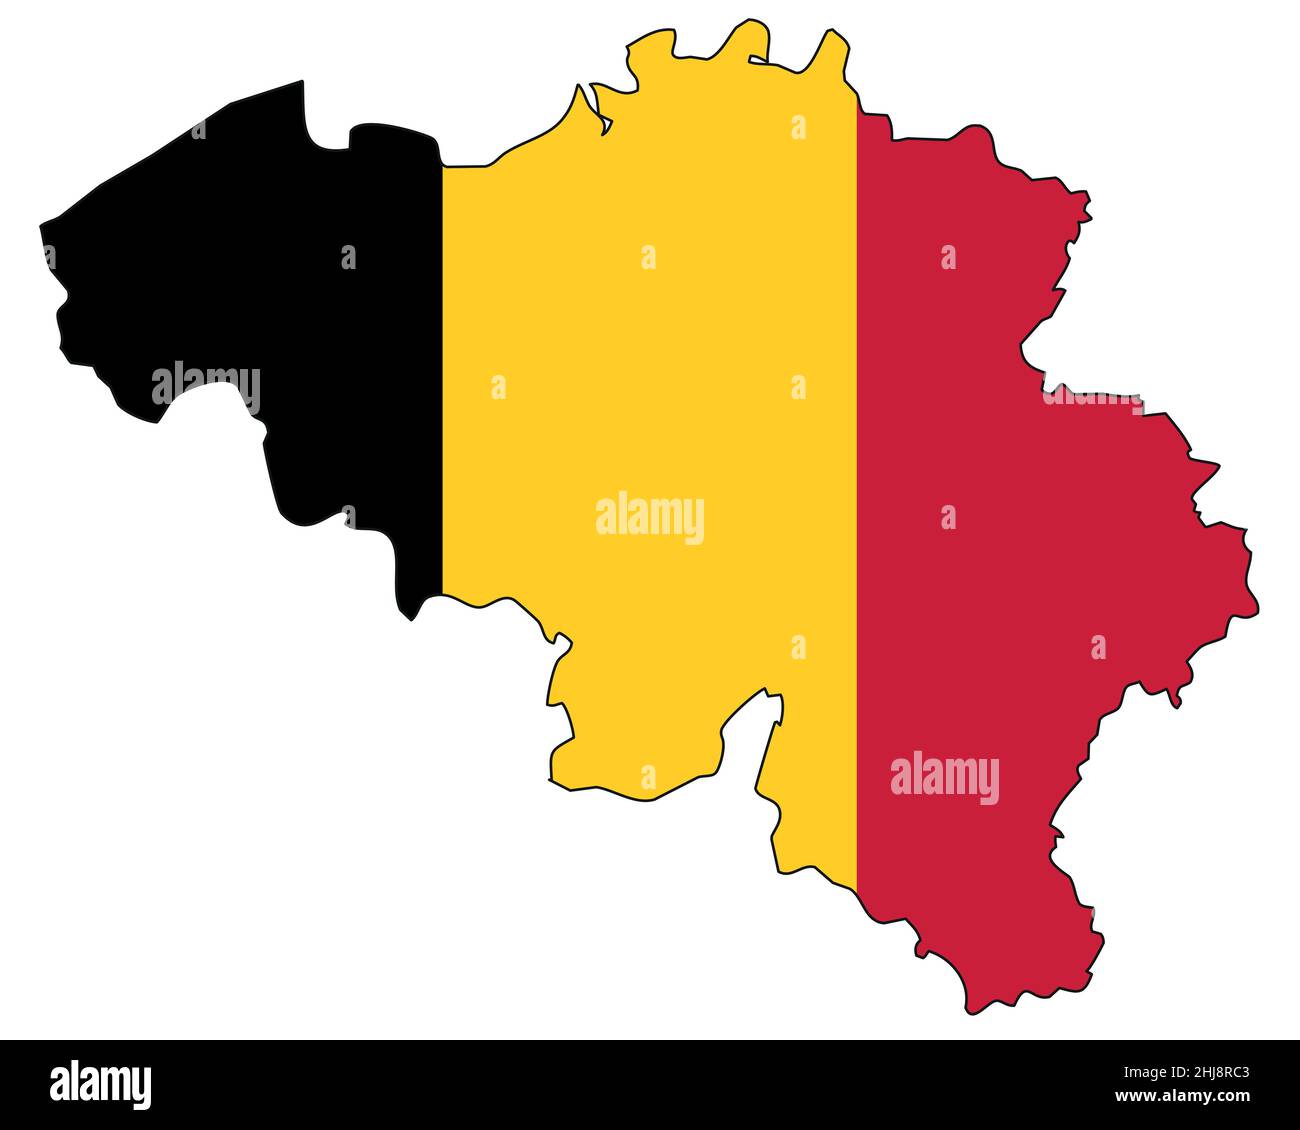 Belgische Landkarte mit Flagge - Umriss eines Staates mit Nationalflagge Stock Vektor